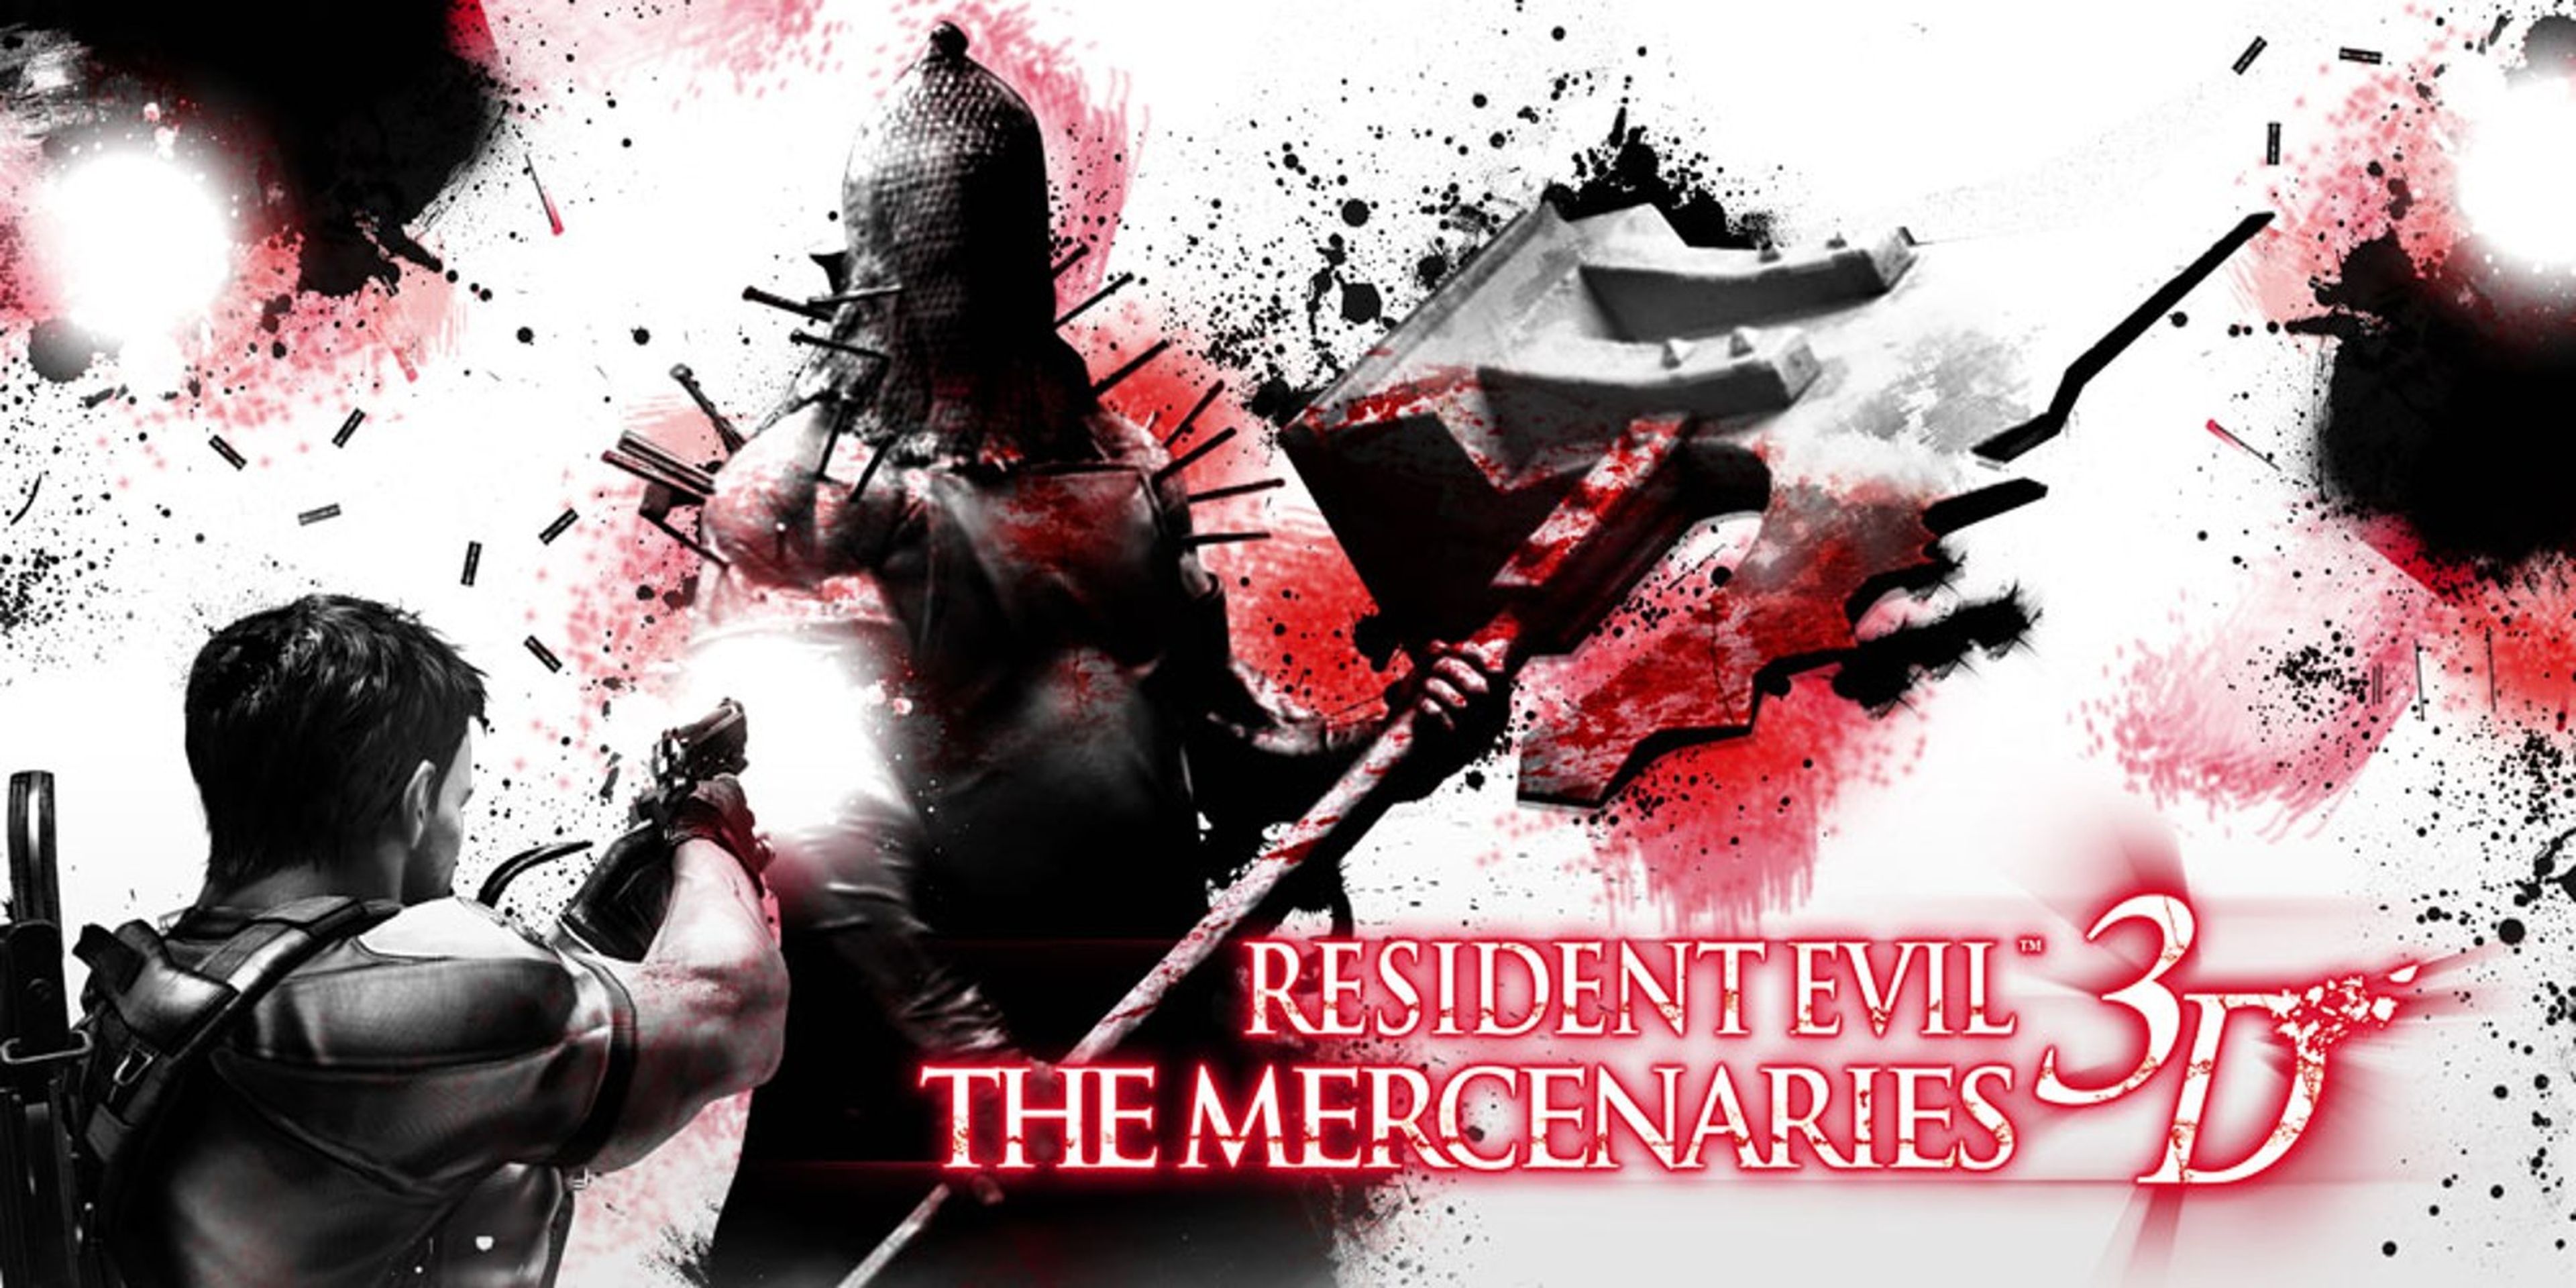 Resident Evil Mercenaries 3D